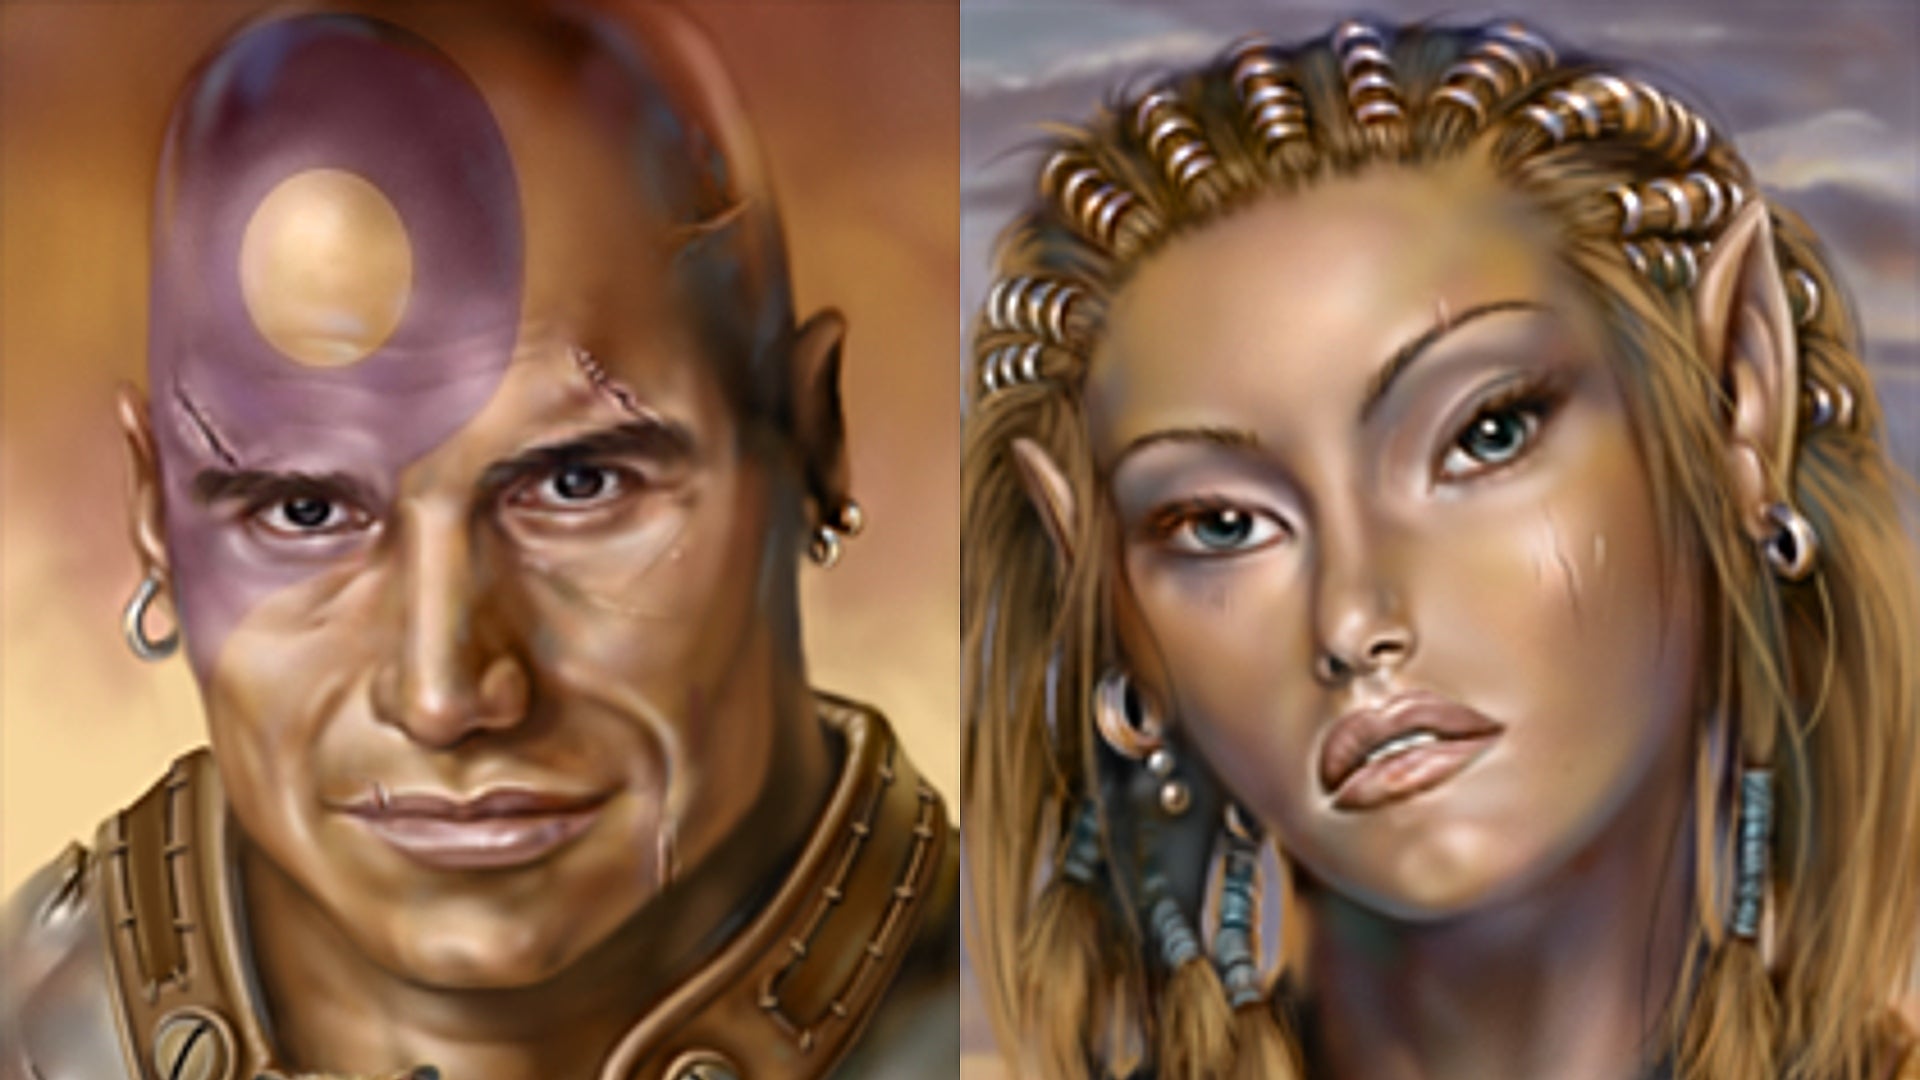 Retratos de personagens de Baldur’s Gate gerados por IA envergonham os jogadores